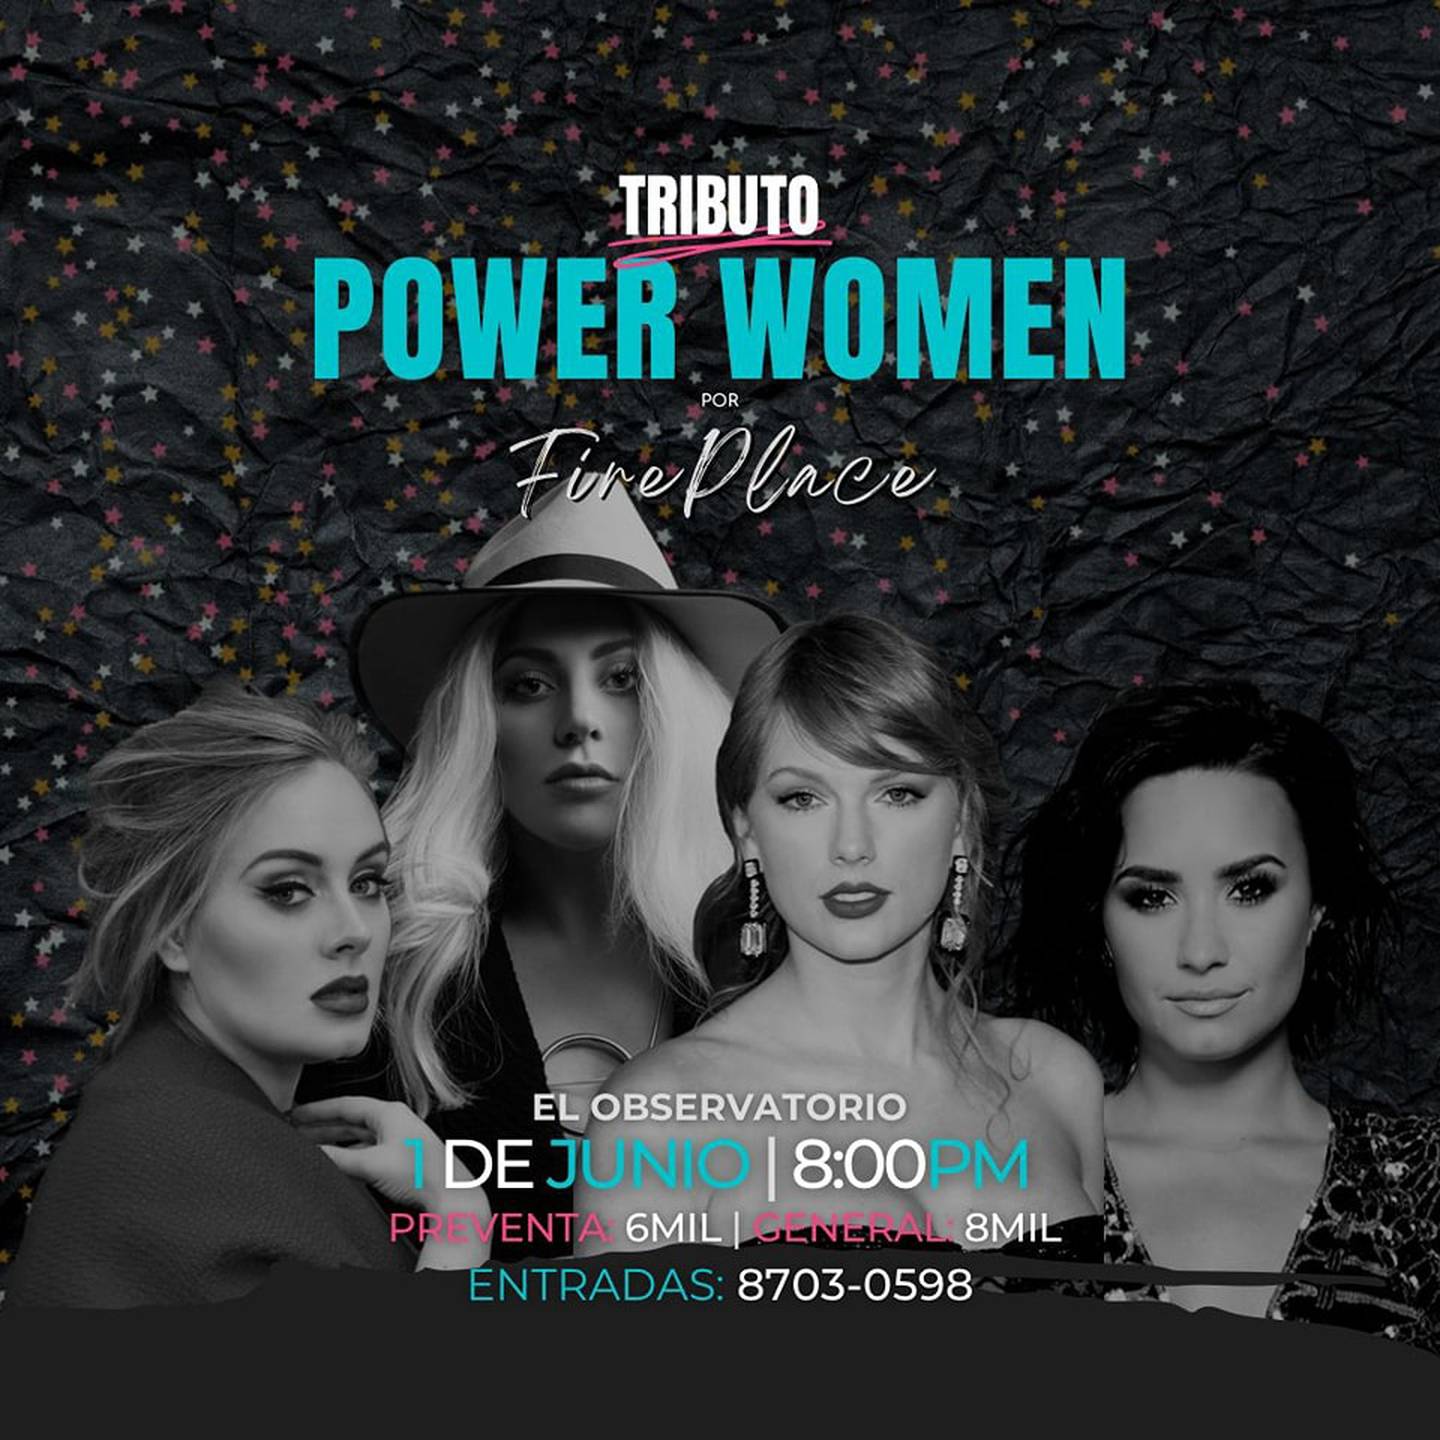 El tributo Tributo Power Women se realizará en El Observatorio. Facebook.